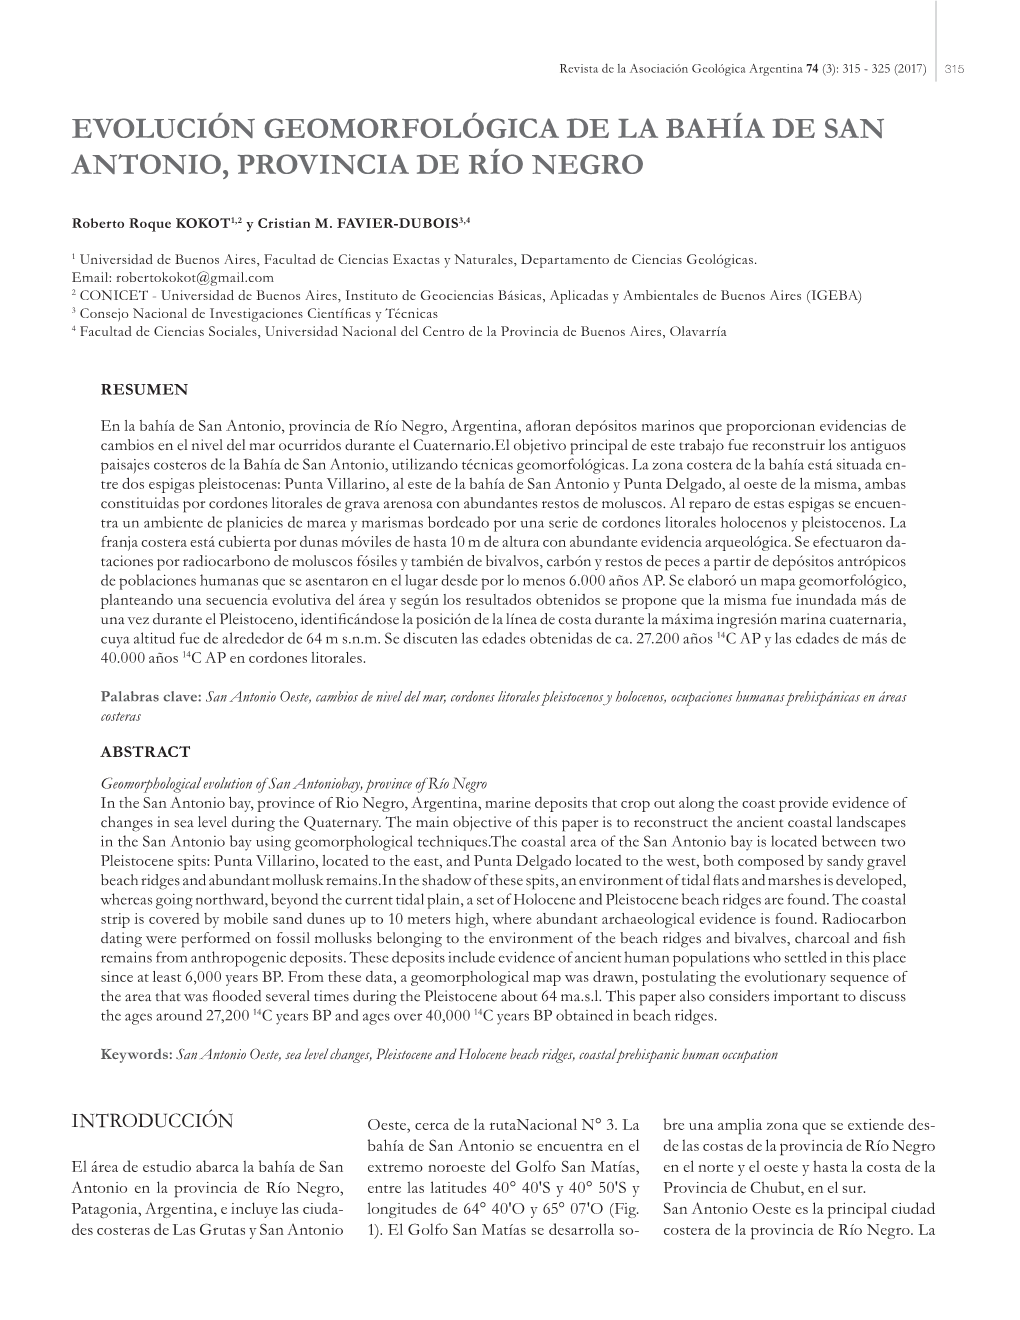 Evolución Geomorfológica De La Bahía De San Antonio, Provincia De Río Negro